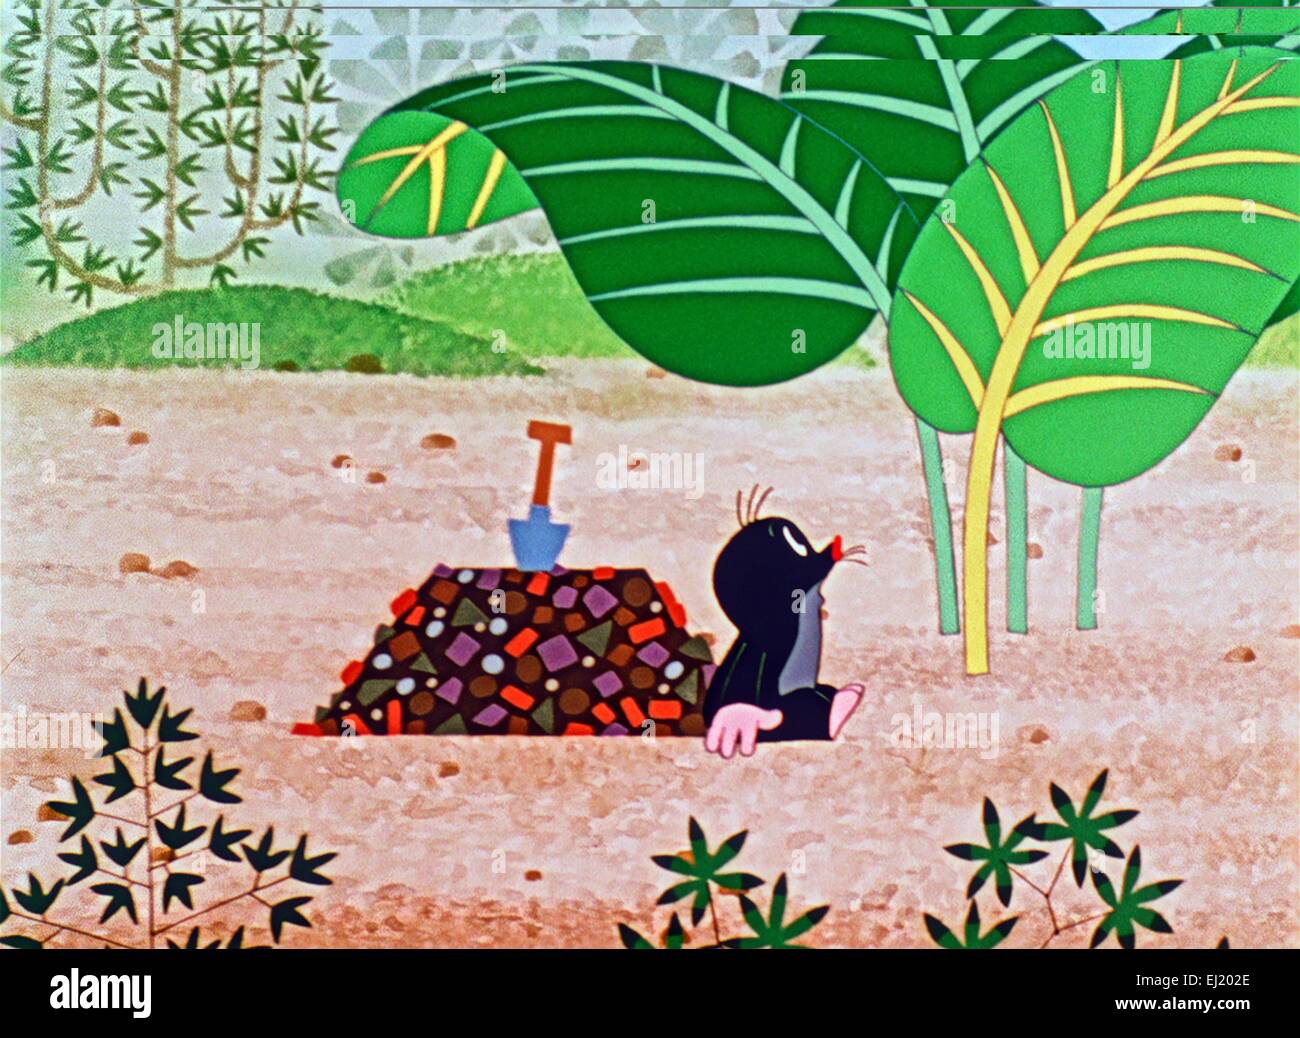 Der kleine Maulwurf - Krtek Zahradnikem Jahr Gärtner: 1969 Tschechoslowakei Regie: Zdenek Miler Animation Stockfoto